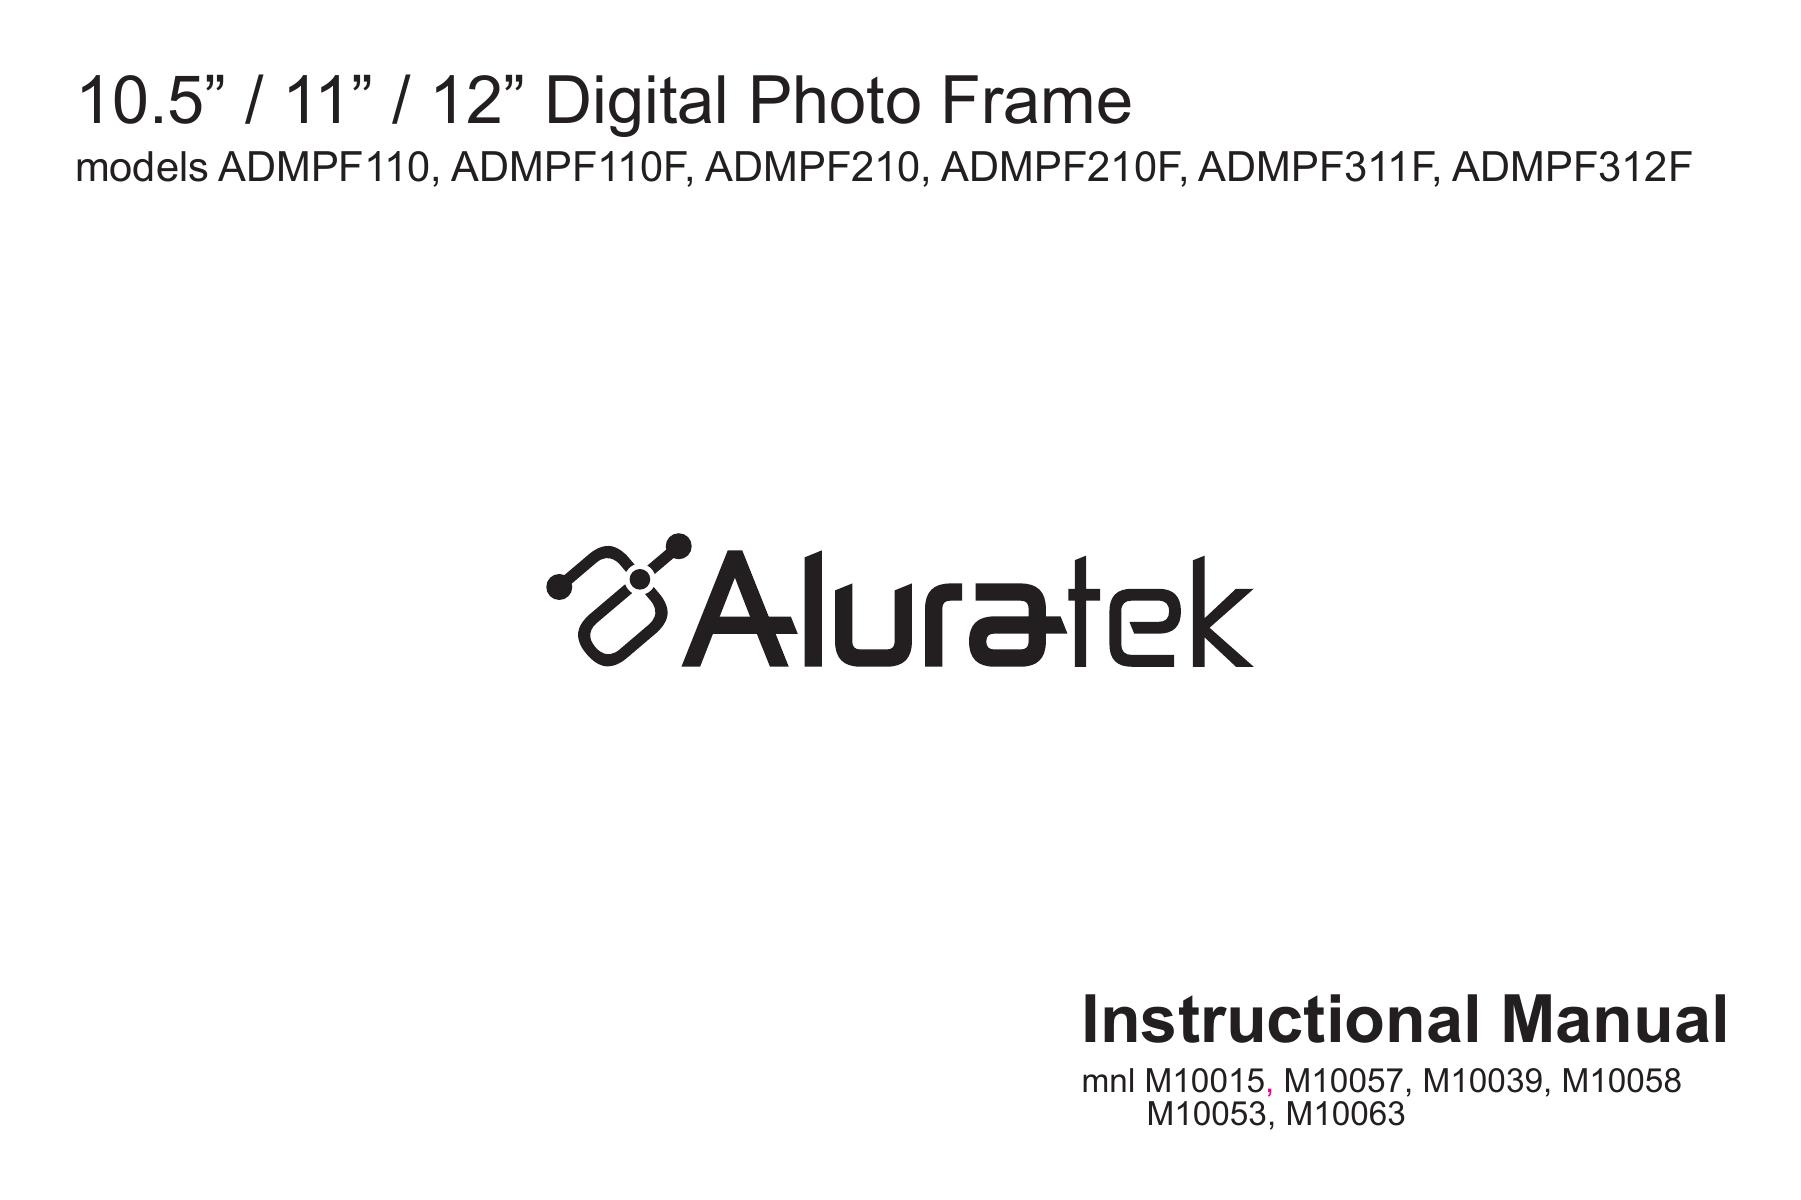 Aluratek M10058 Digital Photo Frame User Manual